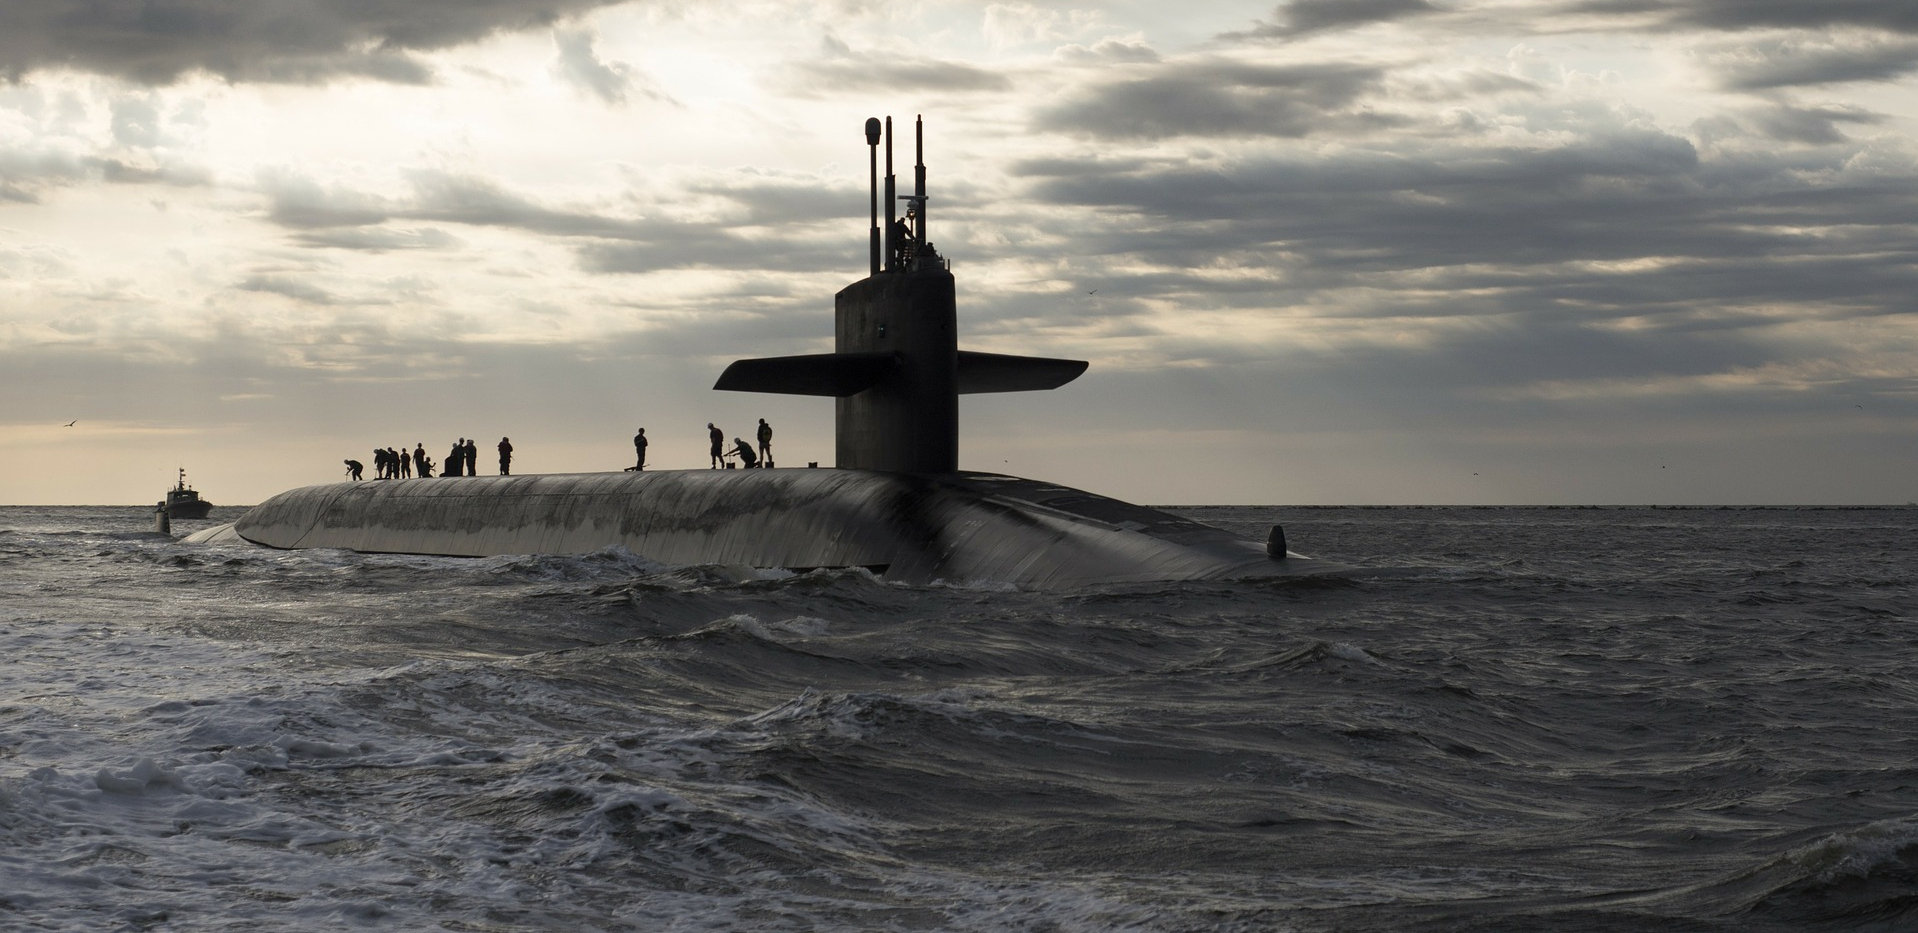 RUSIJA JAČA PACIFIČKU FLOTU Stiže nuklearna balistička podmornica, noćna mora neprijatelja (VIDEO)